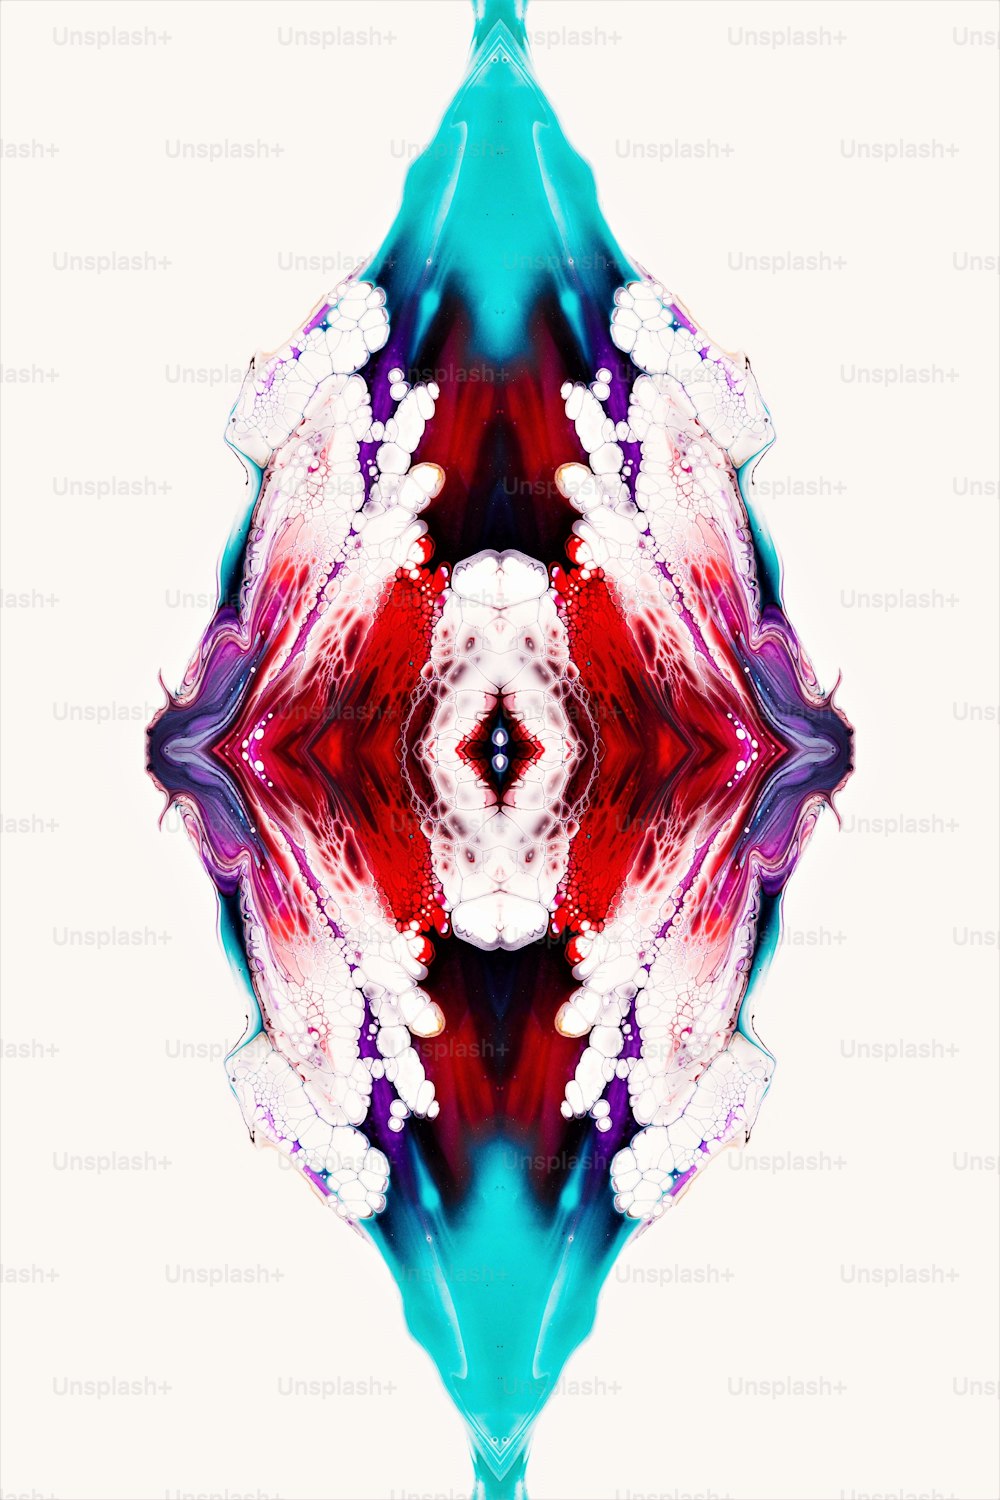 Une image abstraite d’une fleur rouge, blanche et bleue